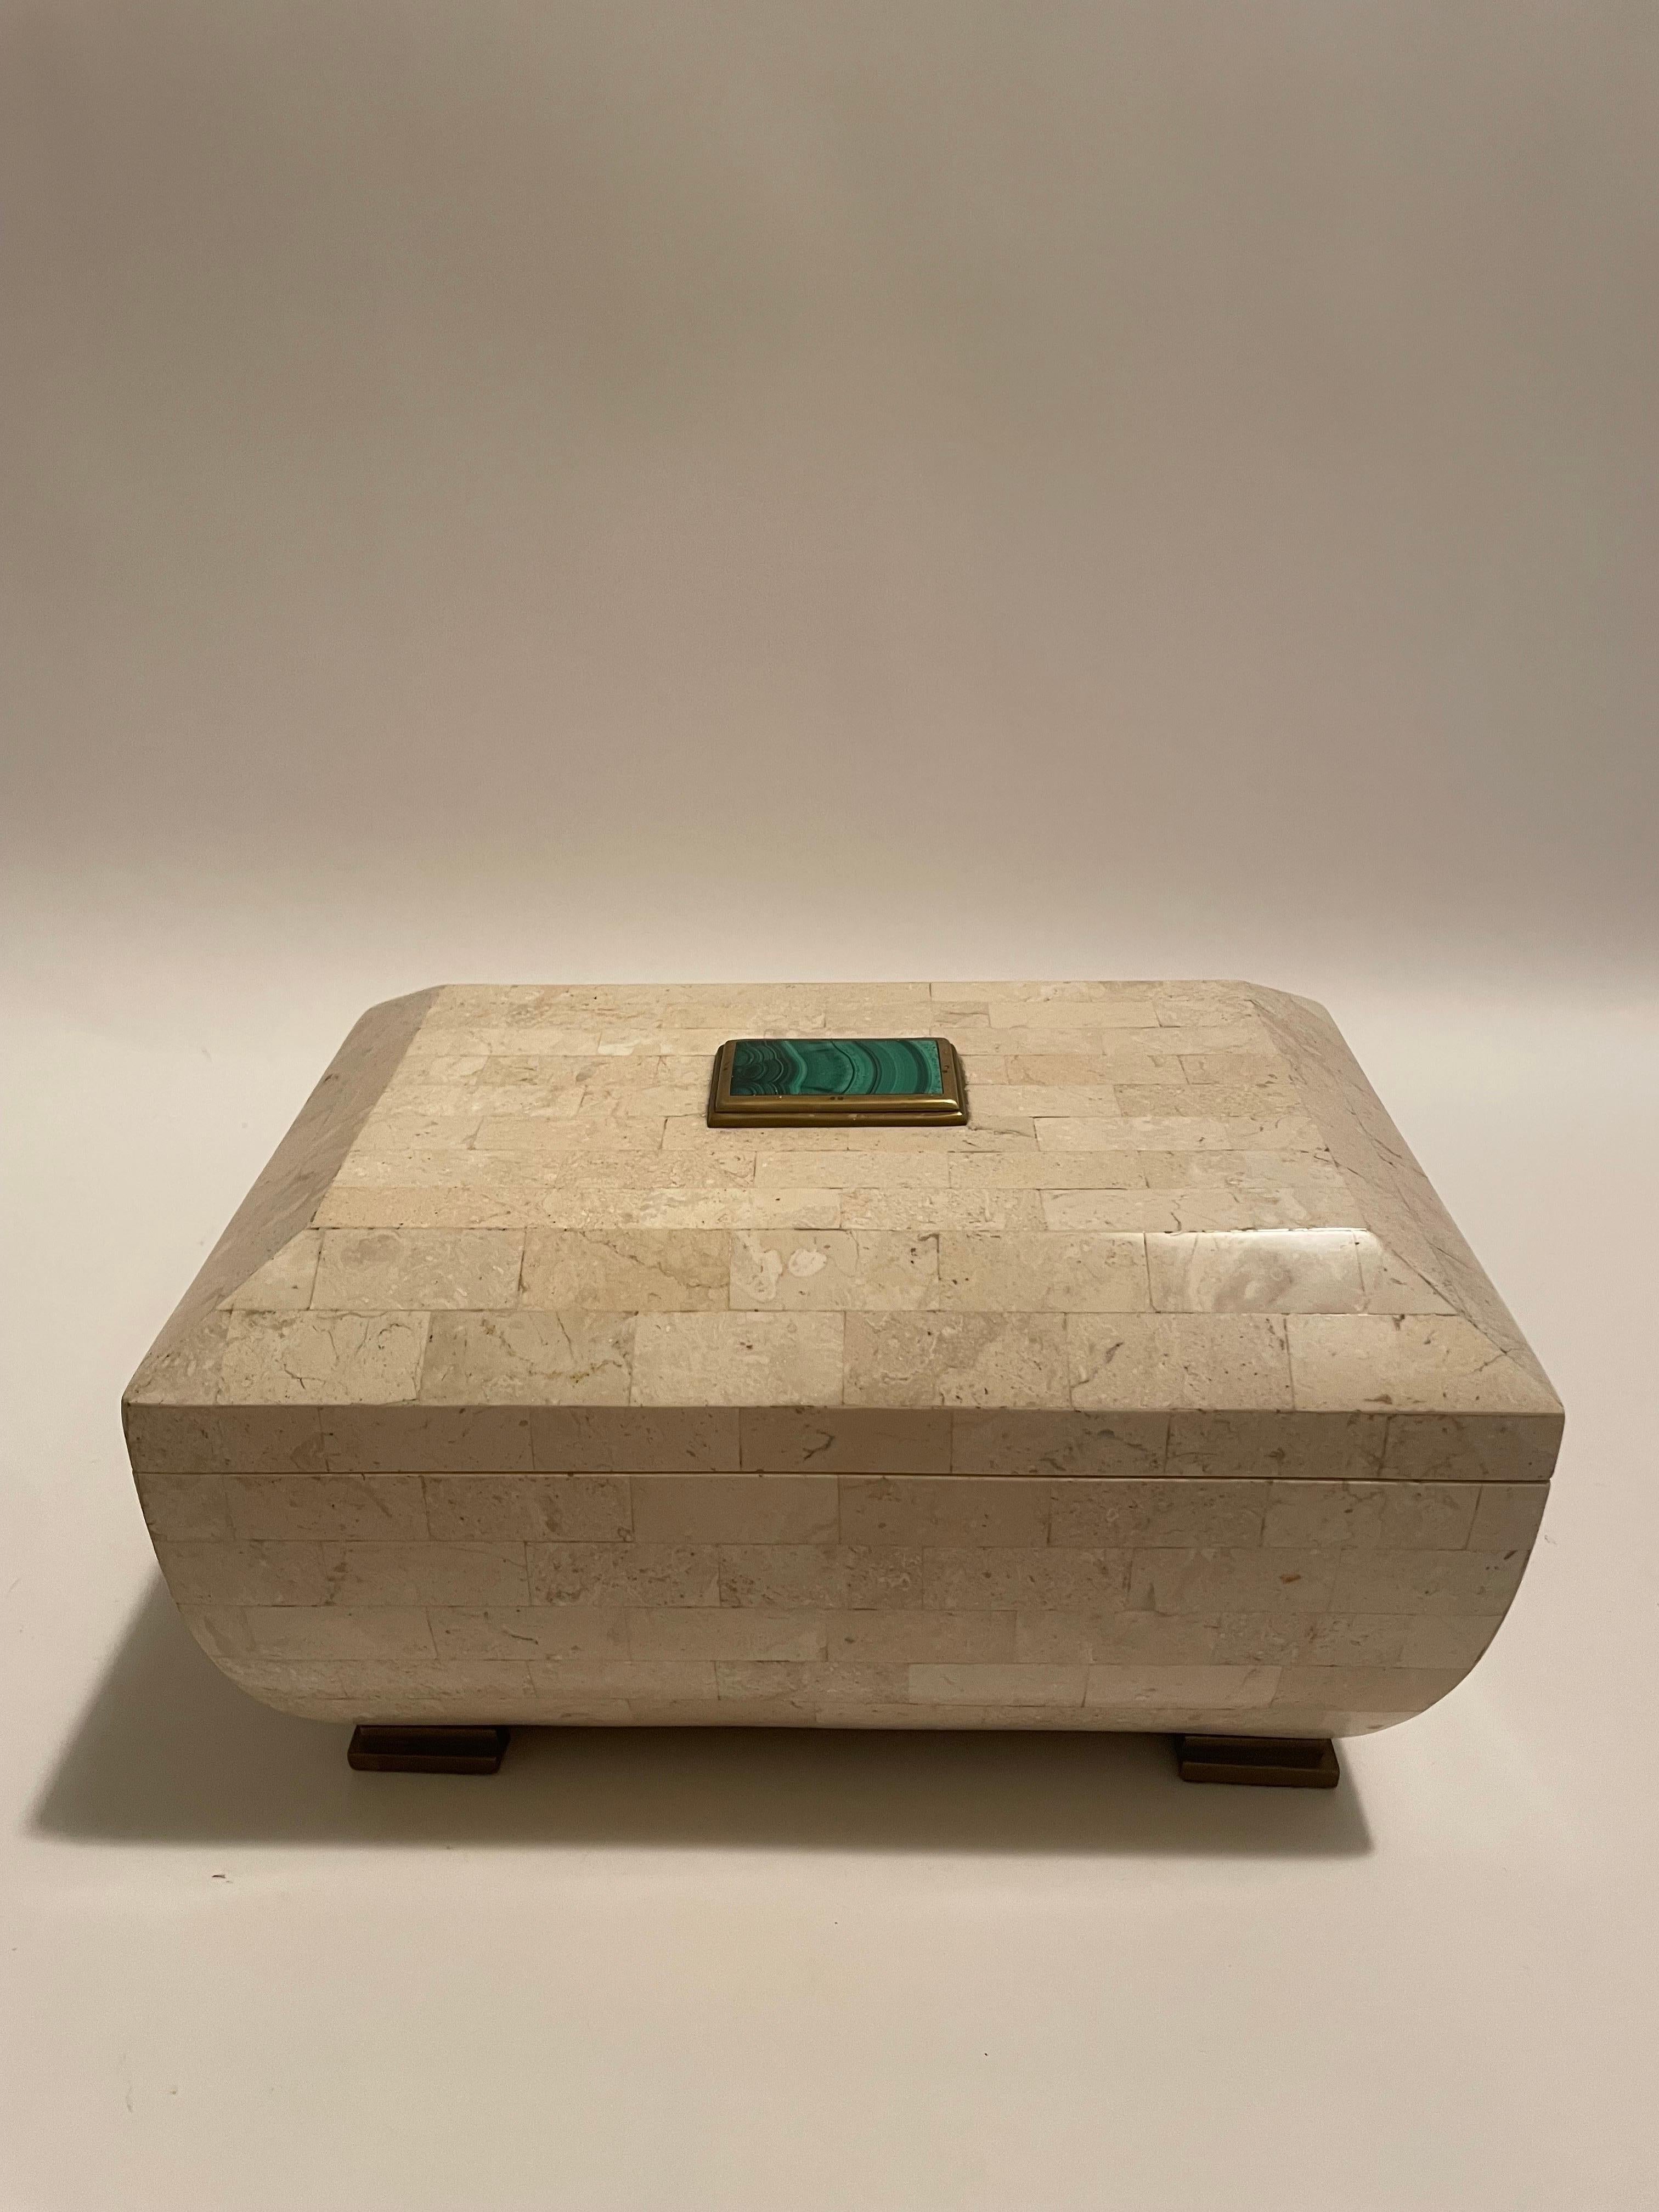 Dies ist eine große Maitland Smith Mosaik Stein-Box mit grünen Malachit Stein auf der Oberseite mit Messingfüßen 
Die Box ist in ausgezeichnetem Zustand und wäre eine schöne Ergänzung für jedes Haus 